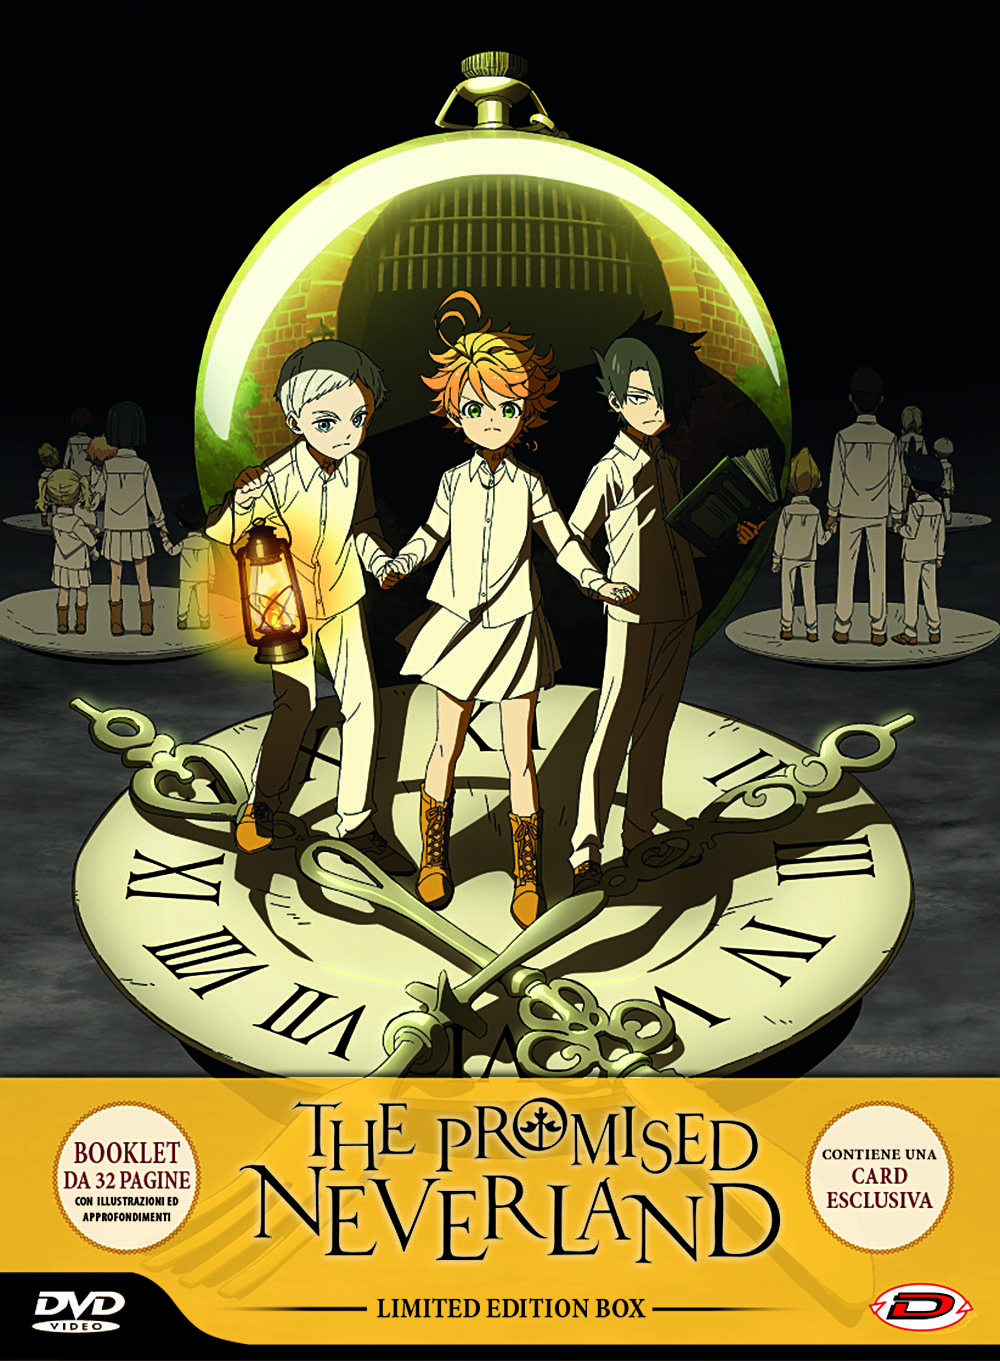 Dvd Promised Neverland (The) - Limited Edition Box (Eps 01-12) (3 Dvd) NUOVO SIGILLATO, EDIZIONE DEL 06/11/2019 SUBITO DISPONIBILE